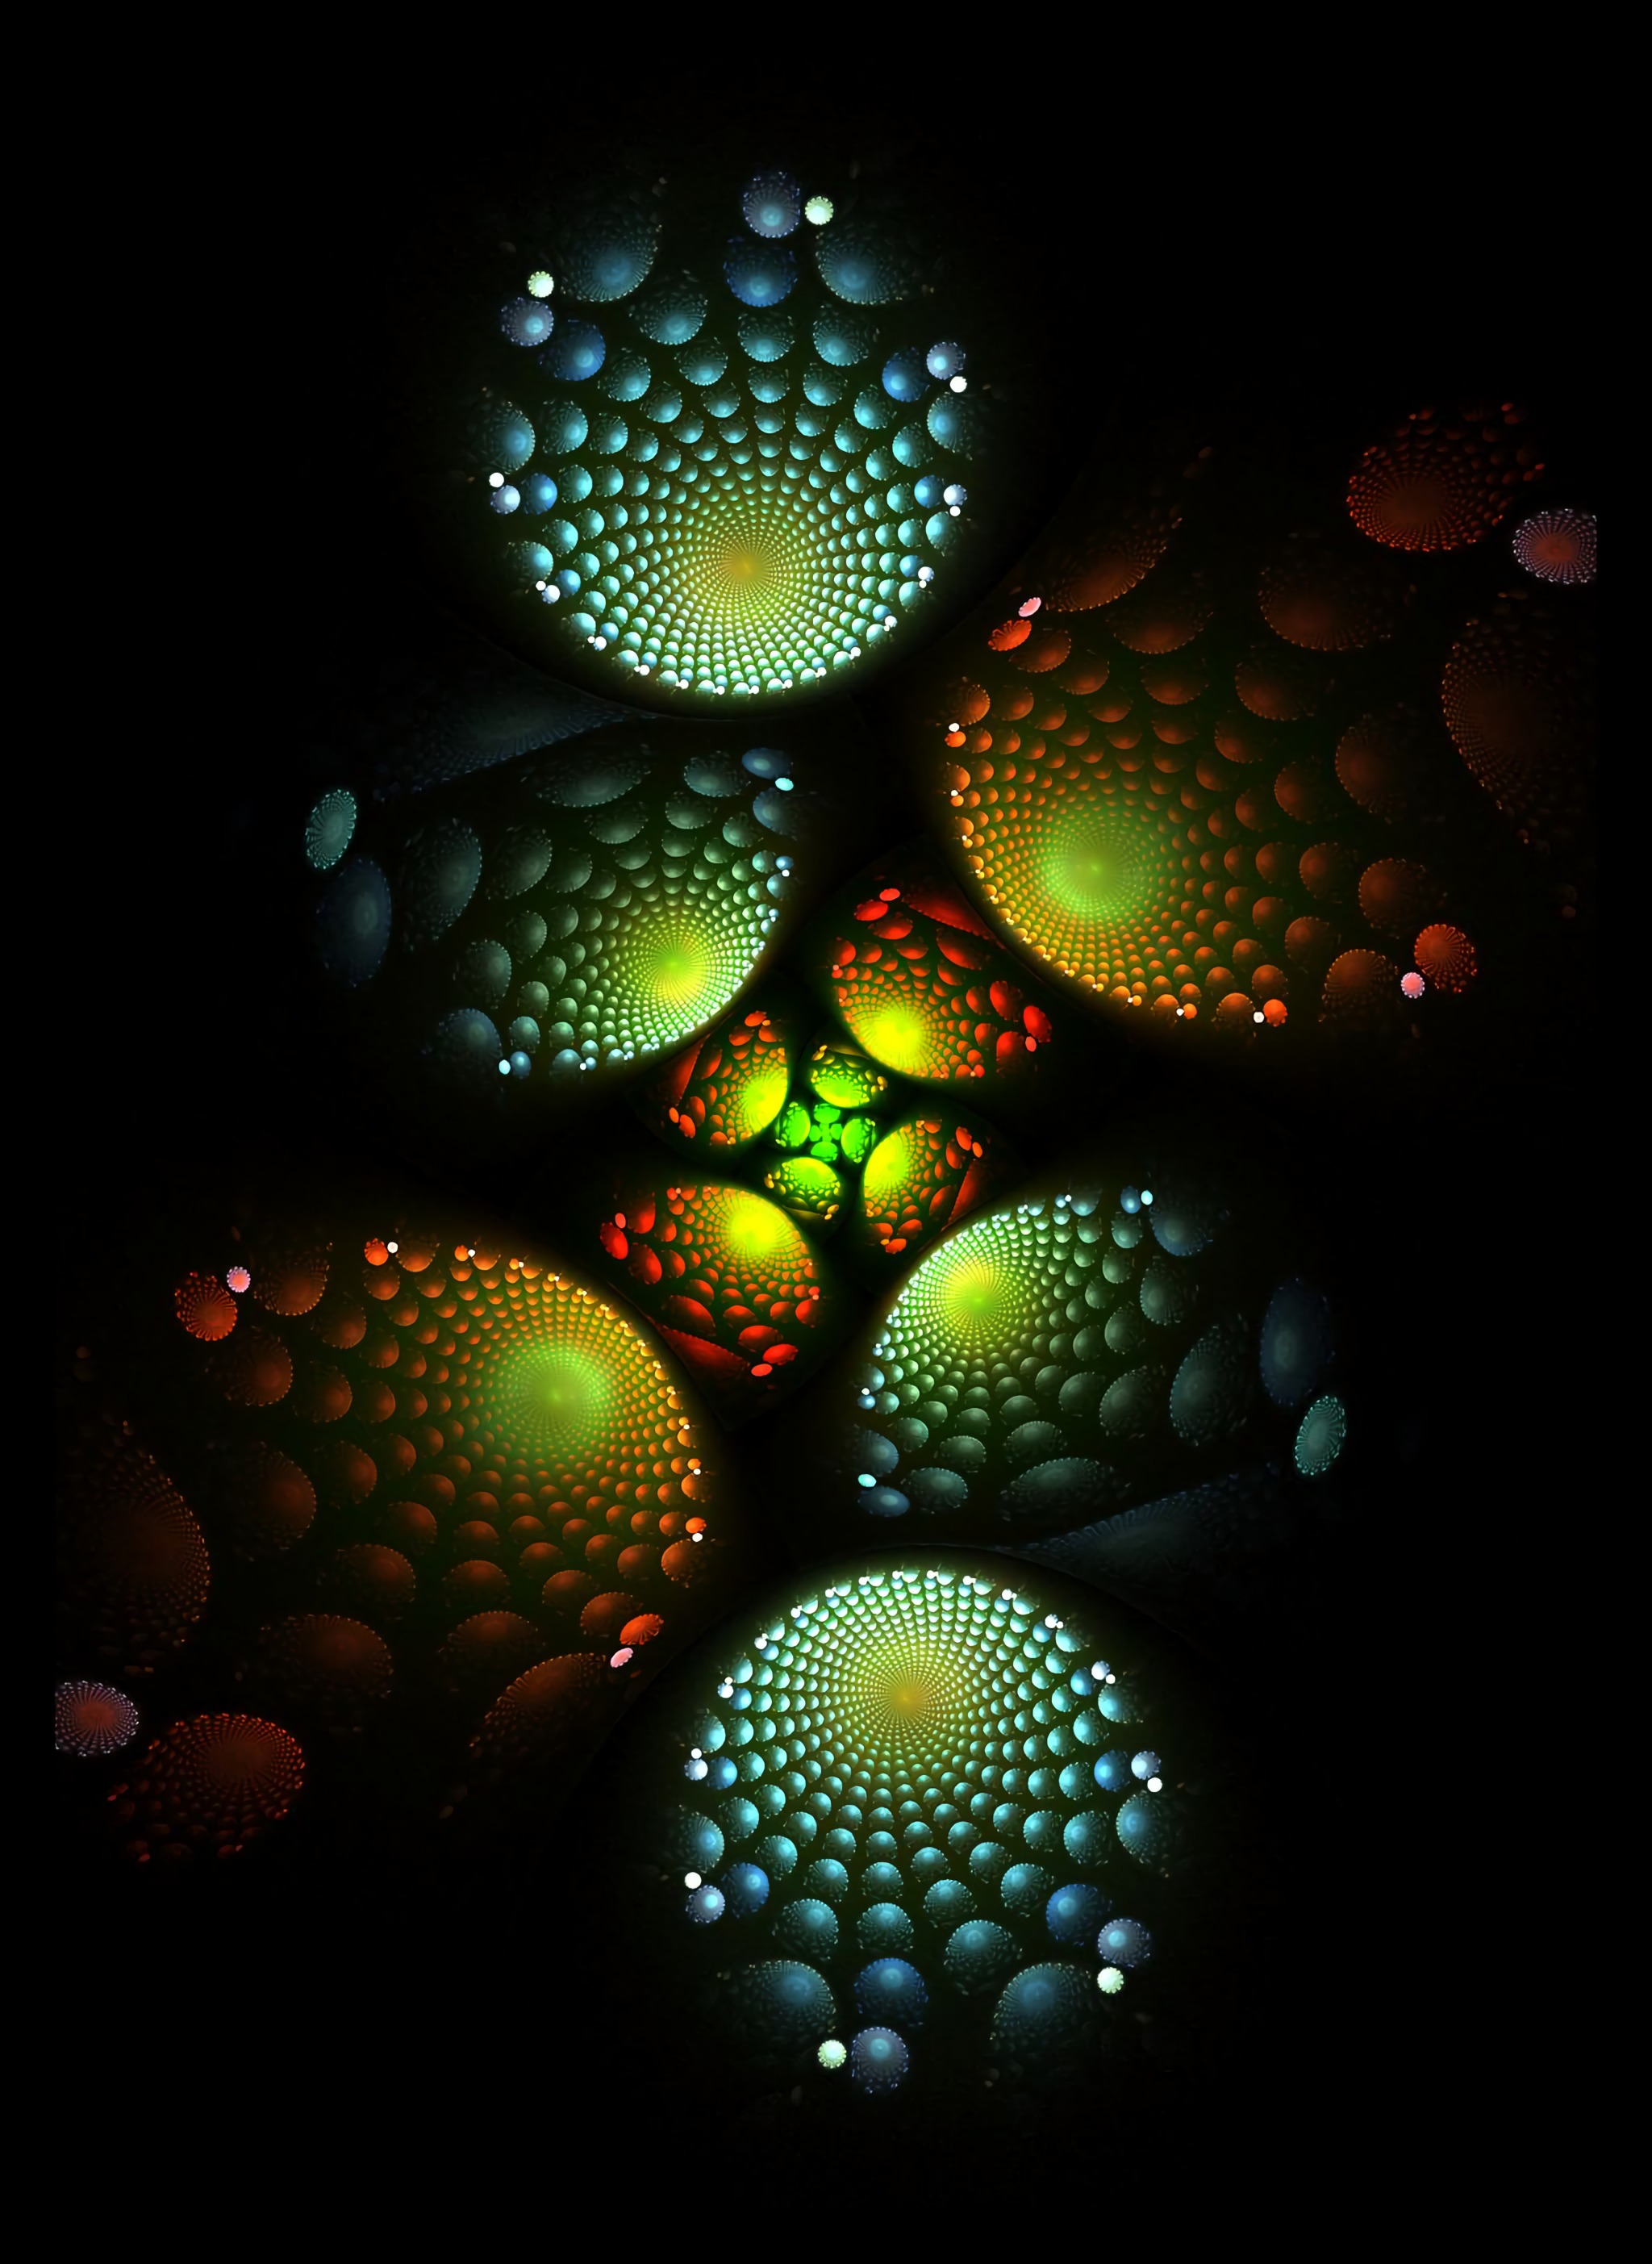 fractal, abstract, dark, spirals, glow, spiral